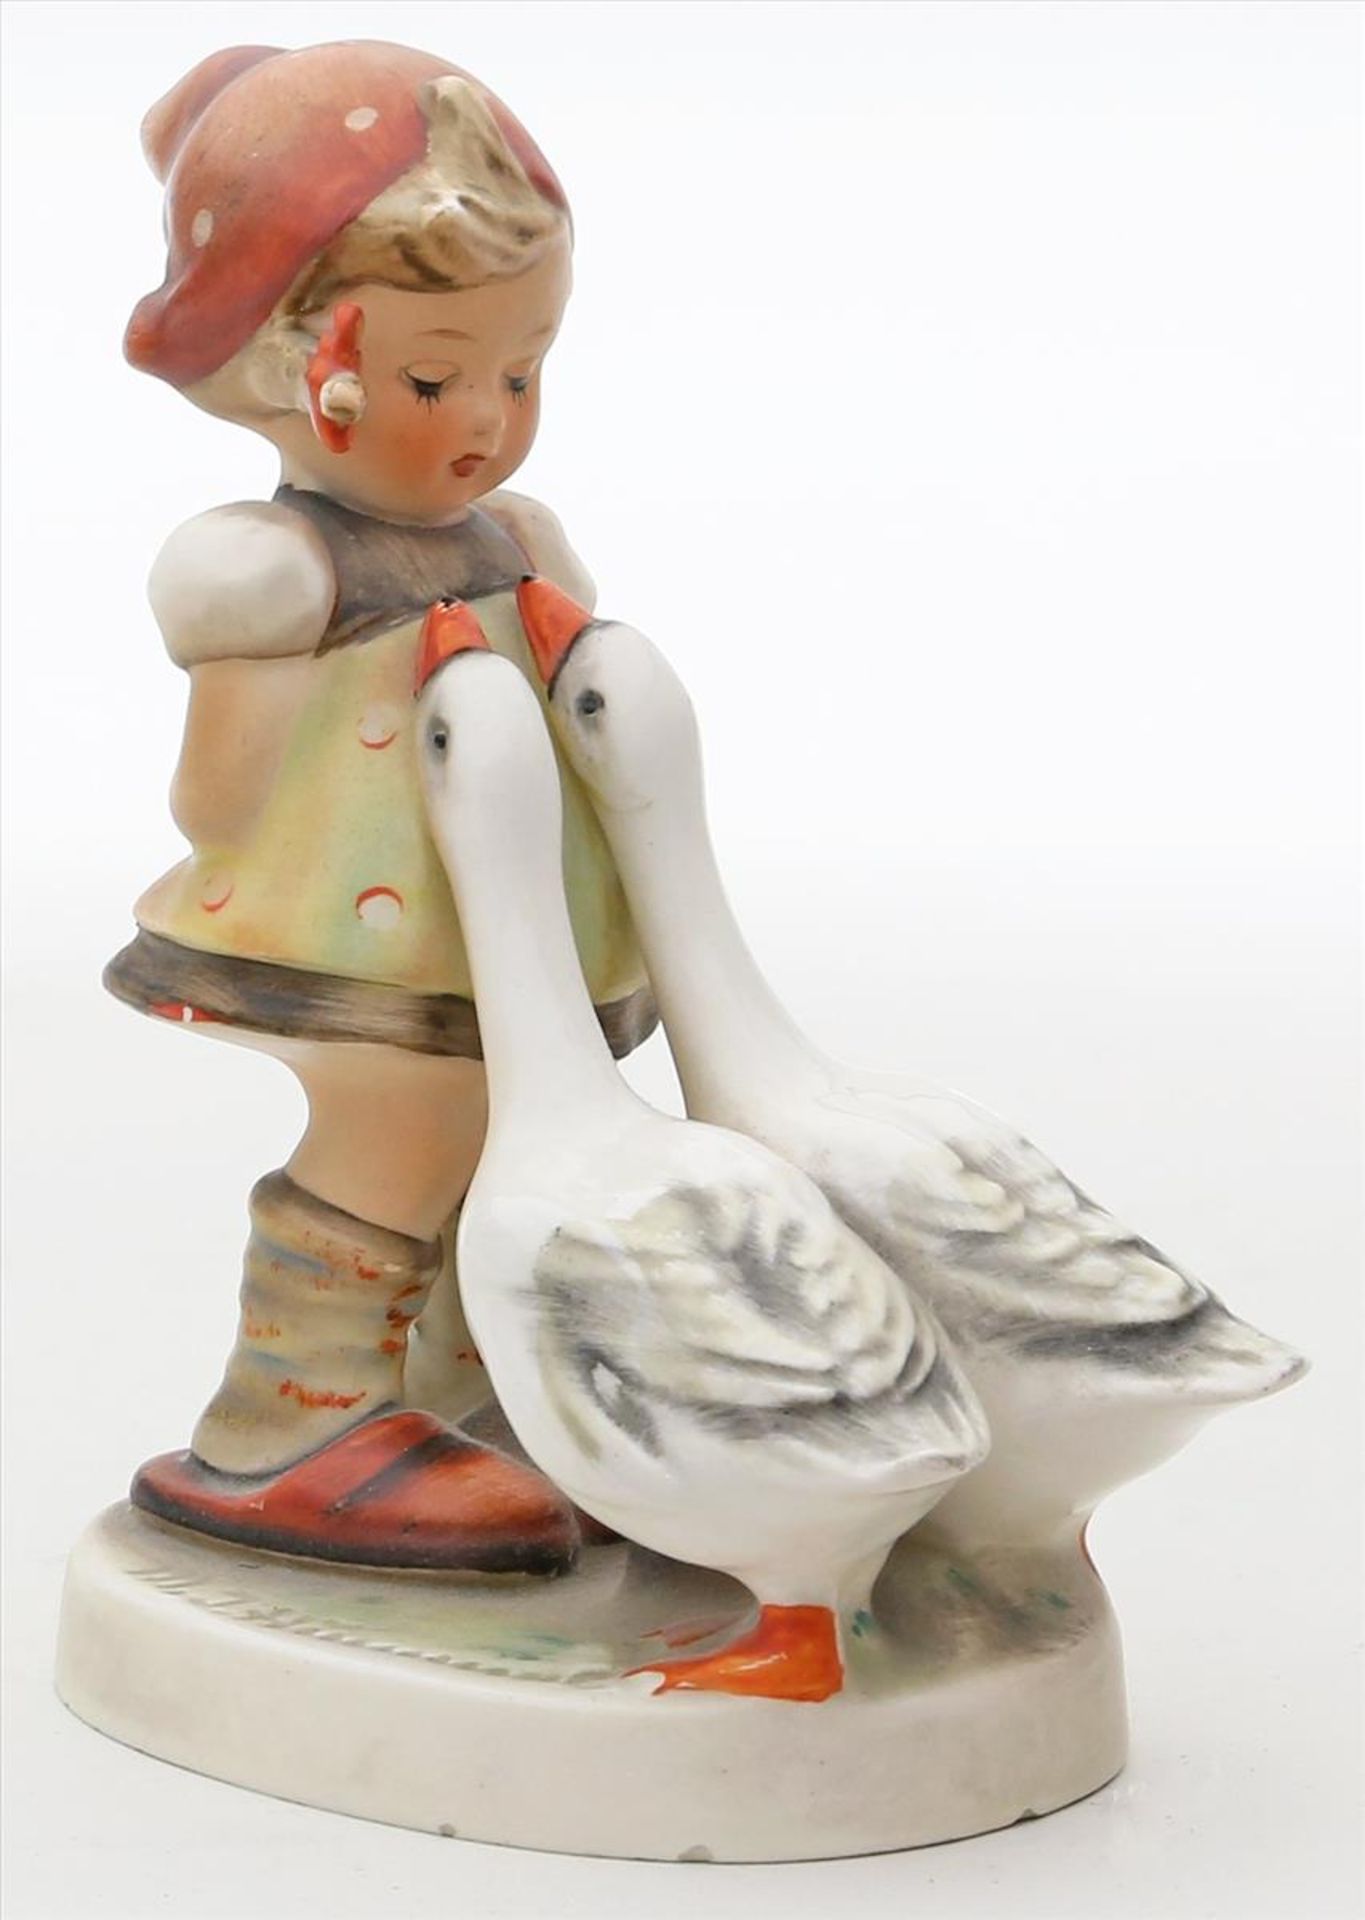 Hummel-Figur "Gänseliesl".Keramik. Bunt bemalt. Figur eines Mädchens mit 2 Gänsen. Kl. Bestoßungen